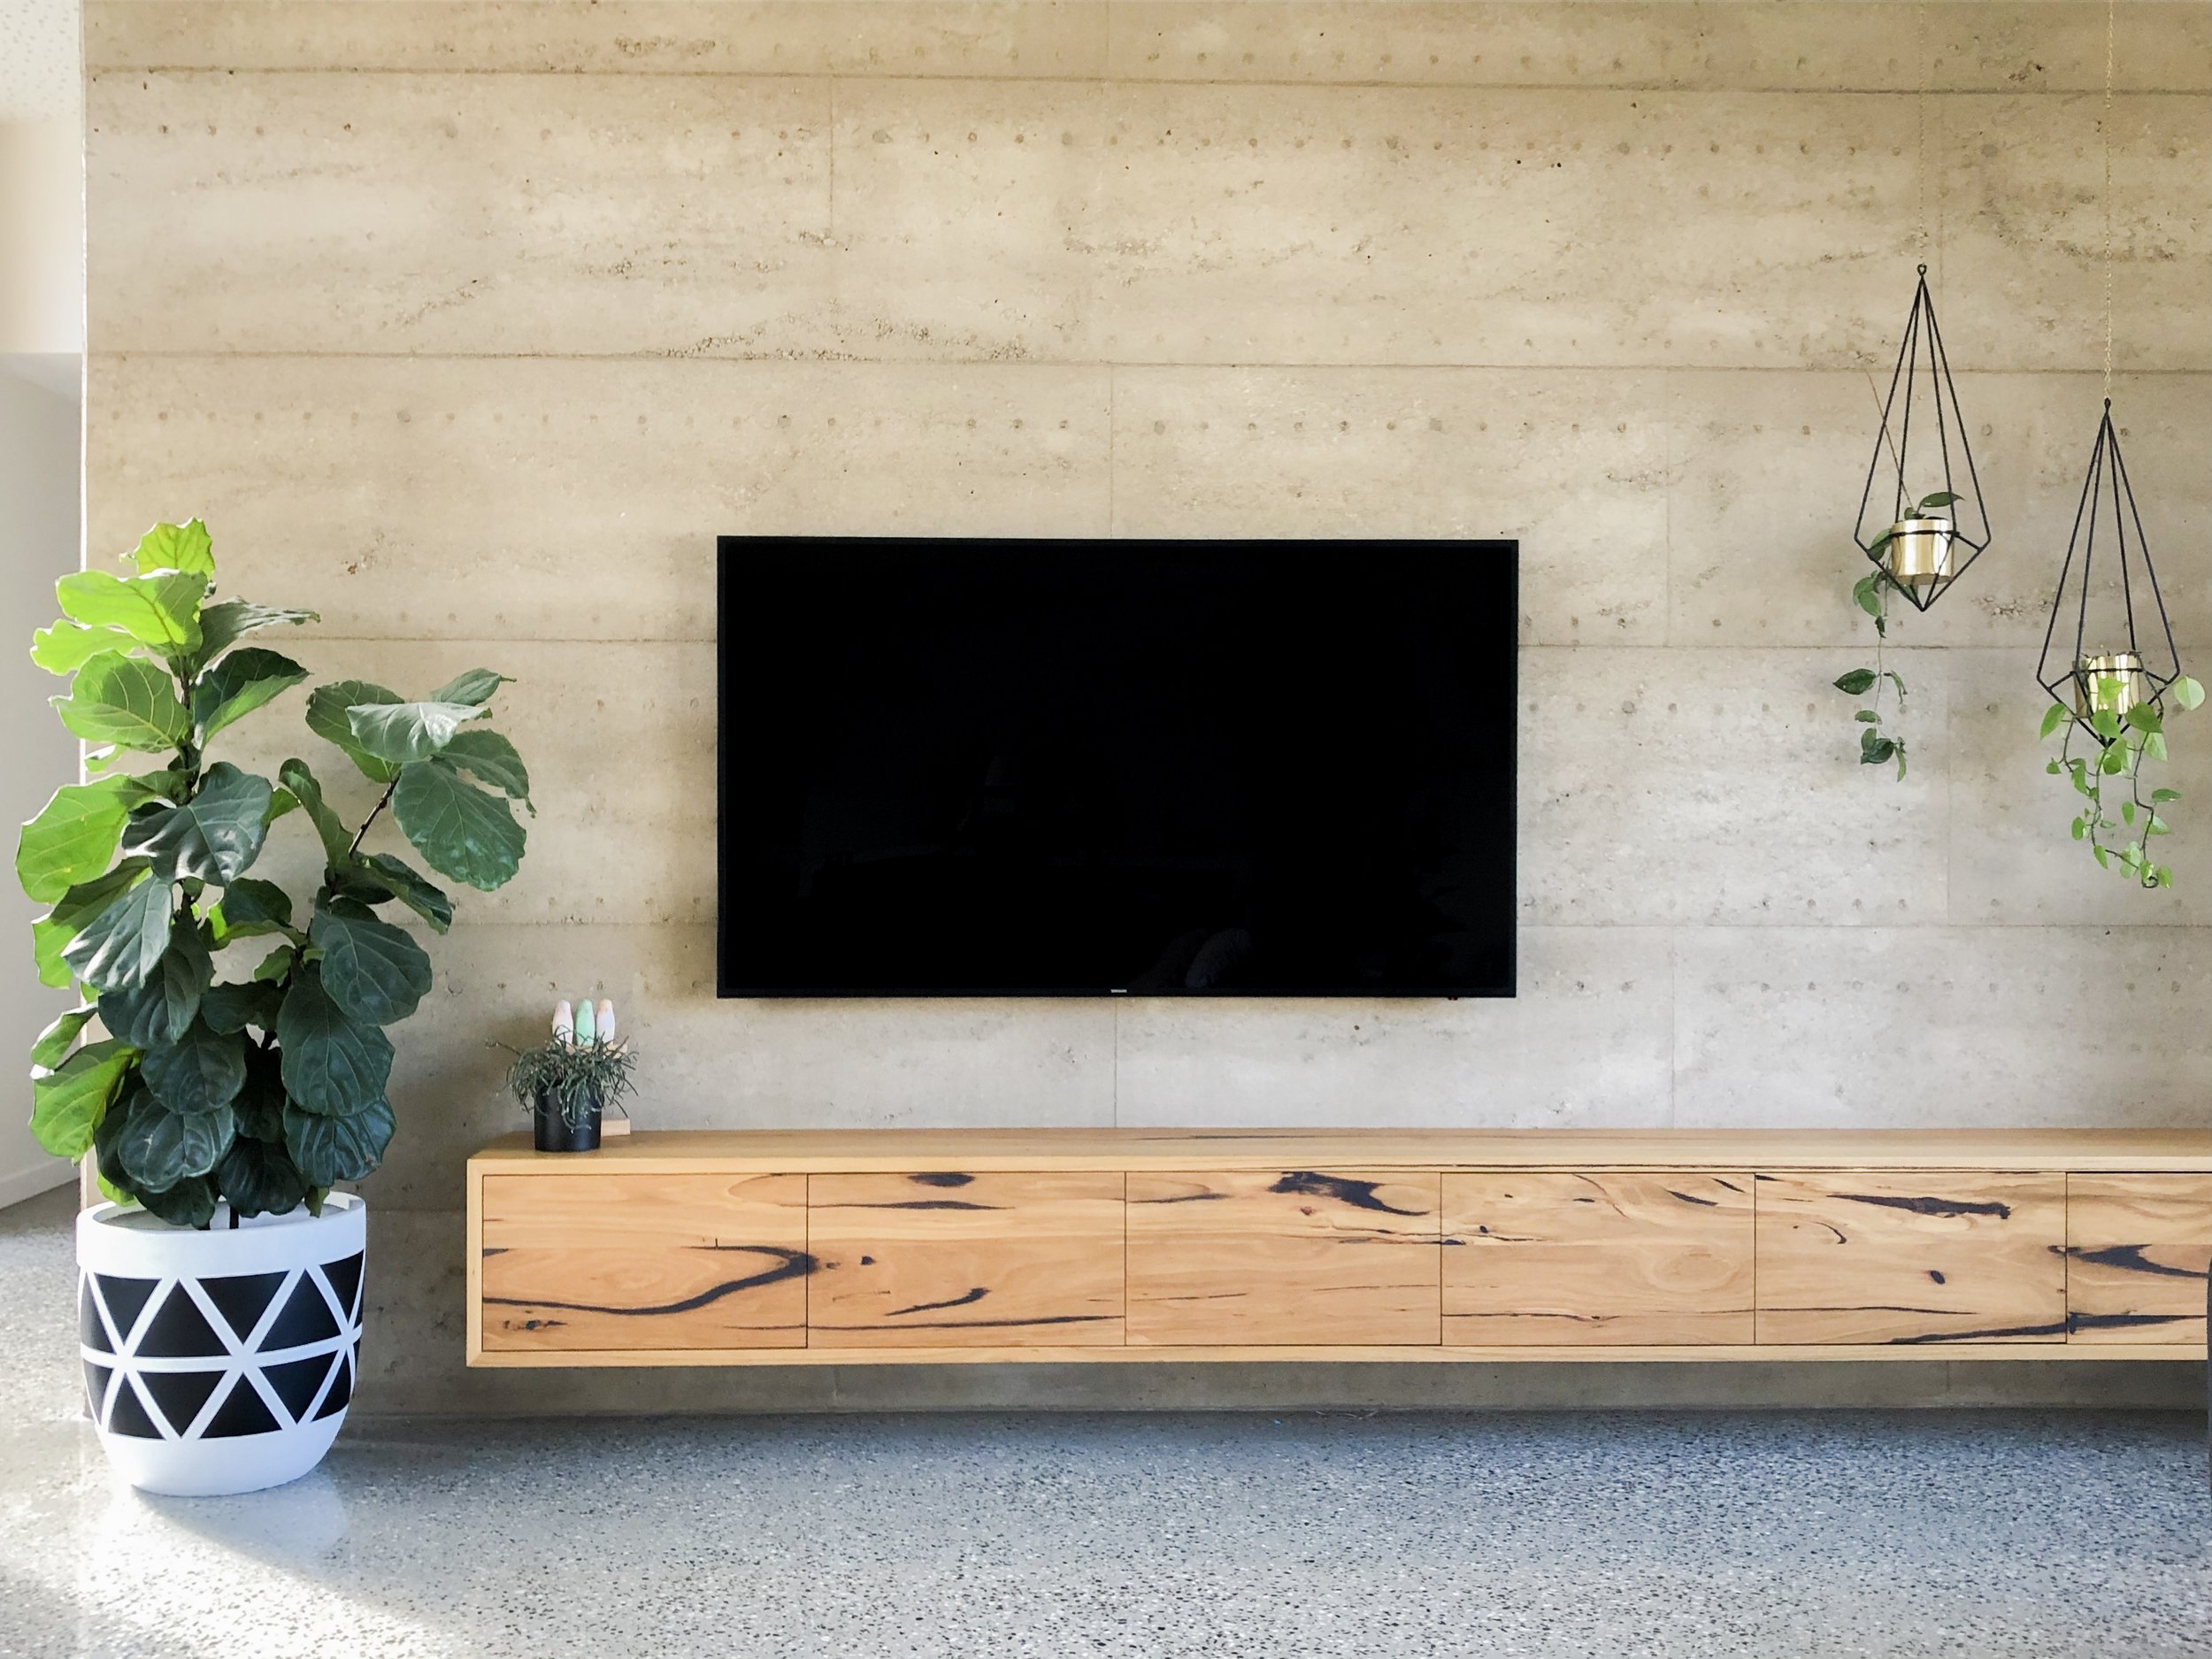 Messmate timber TV cabinet Melbourne